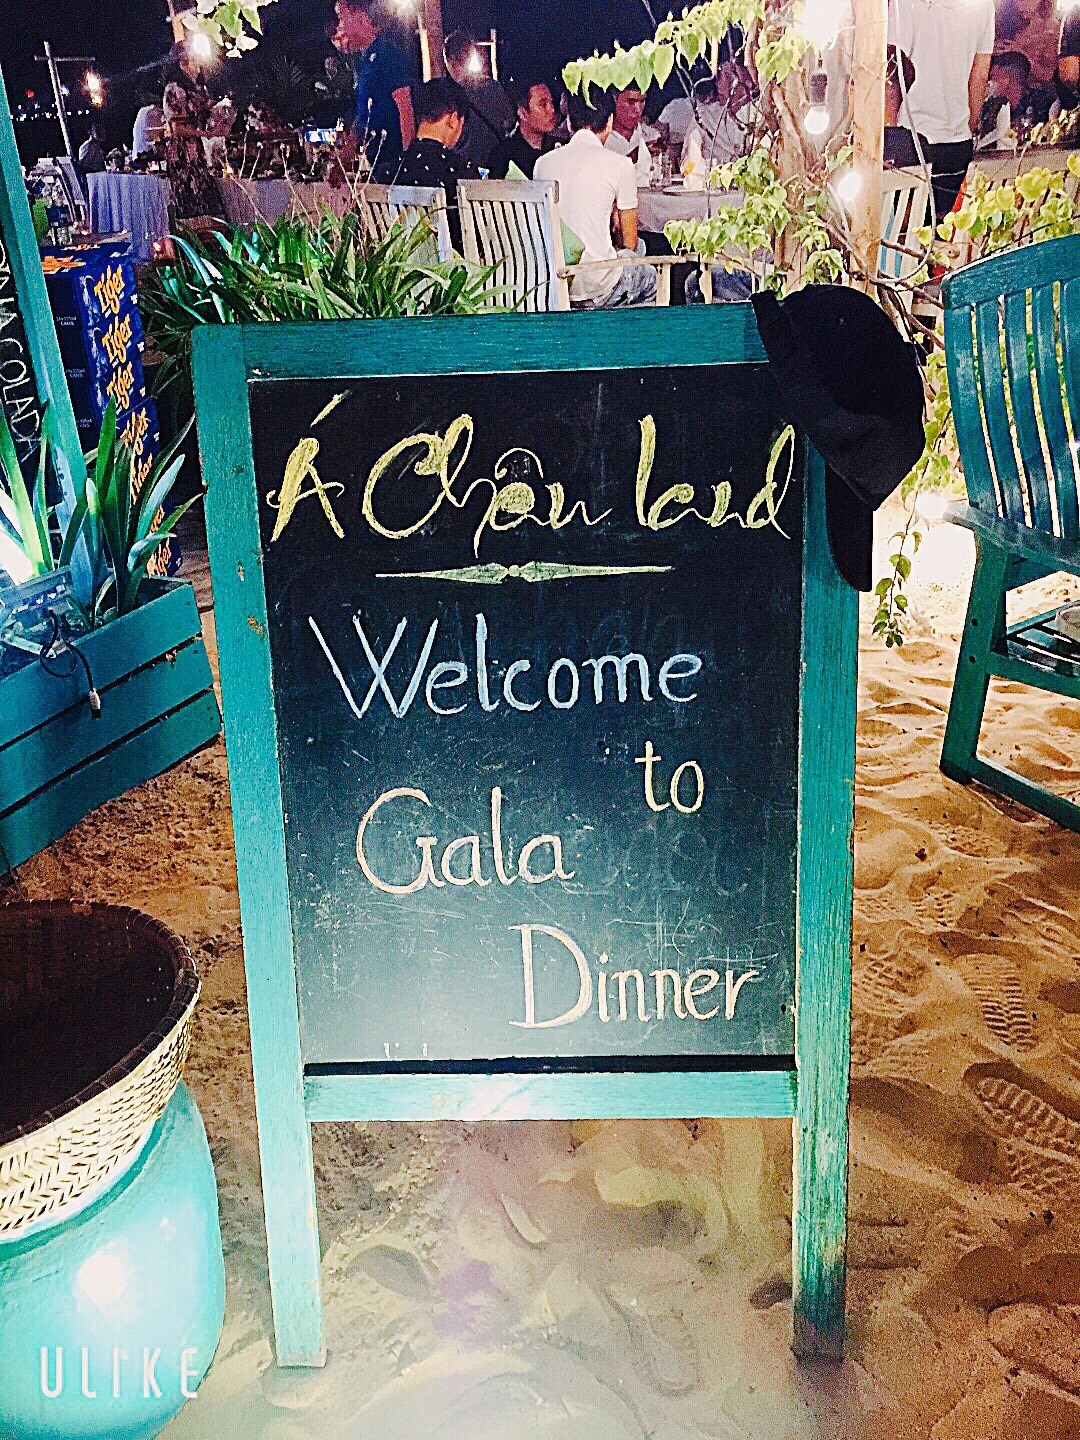 a chau land to chuc gala dinner lang man ben bo bien quy nhon 2 - Á Châu Land tổ chức gala dinner lãng mạn bên bờ biển Quy Nhơn